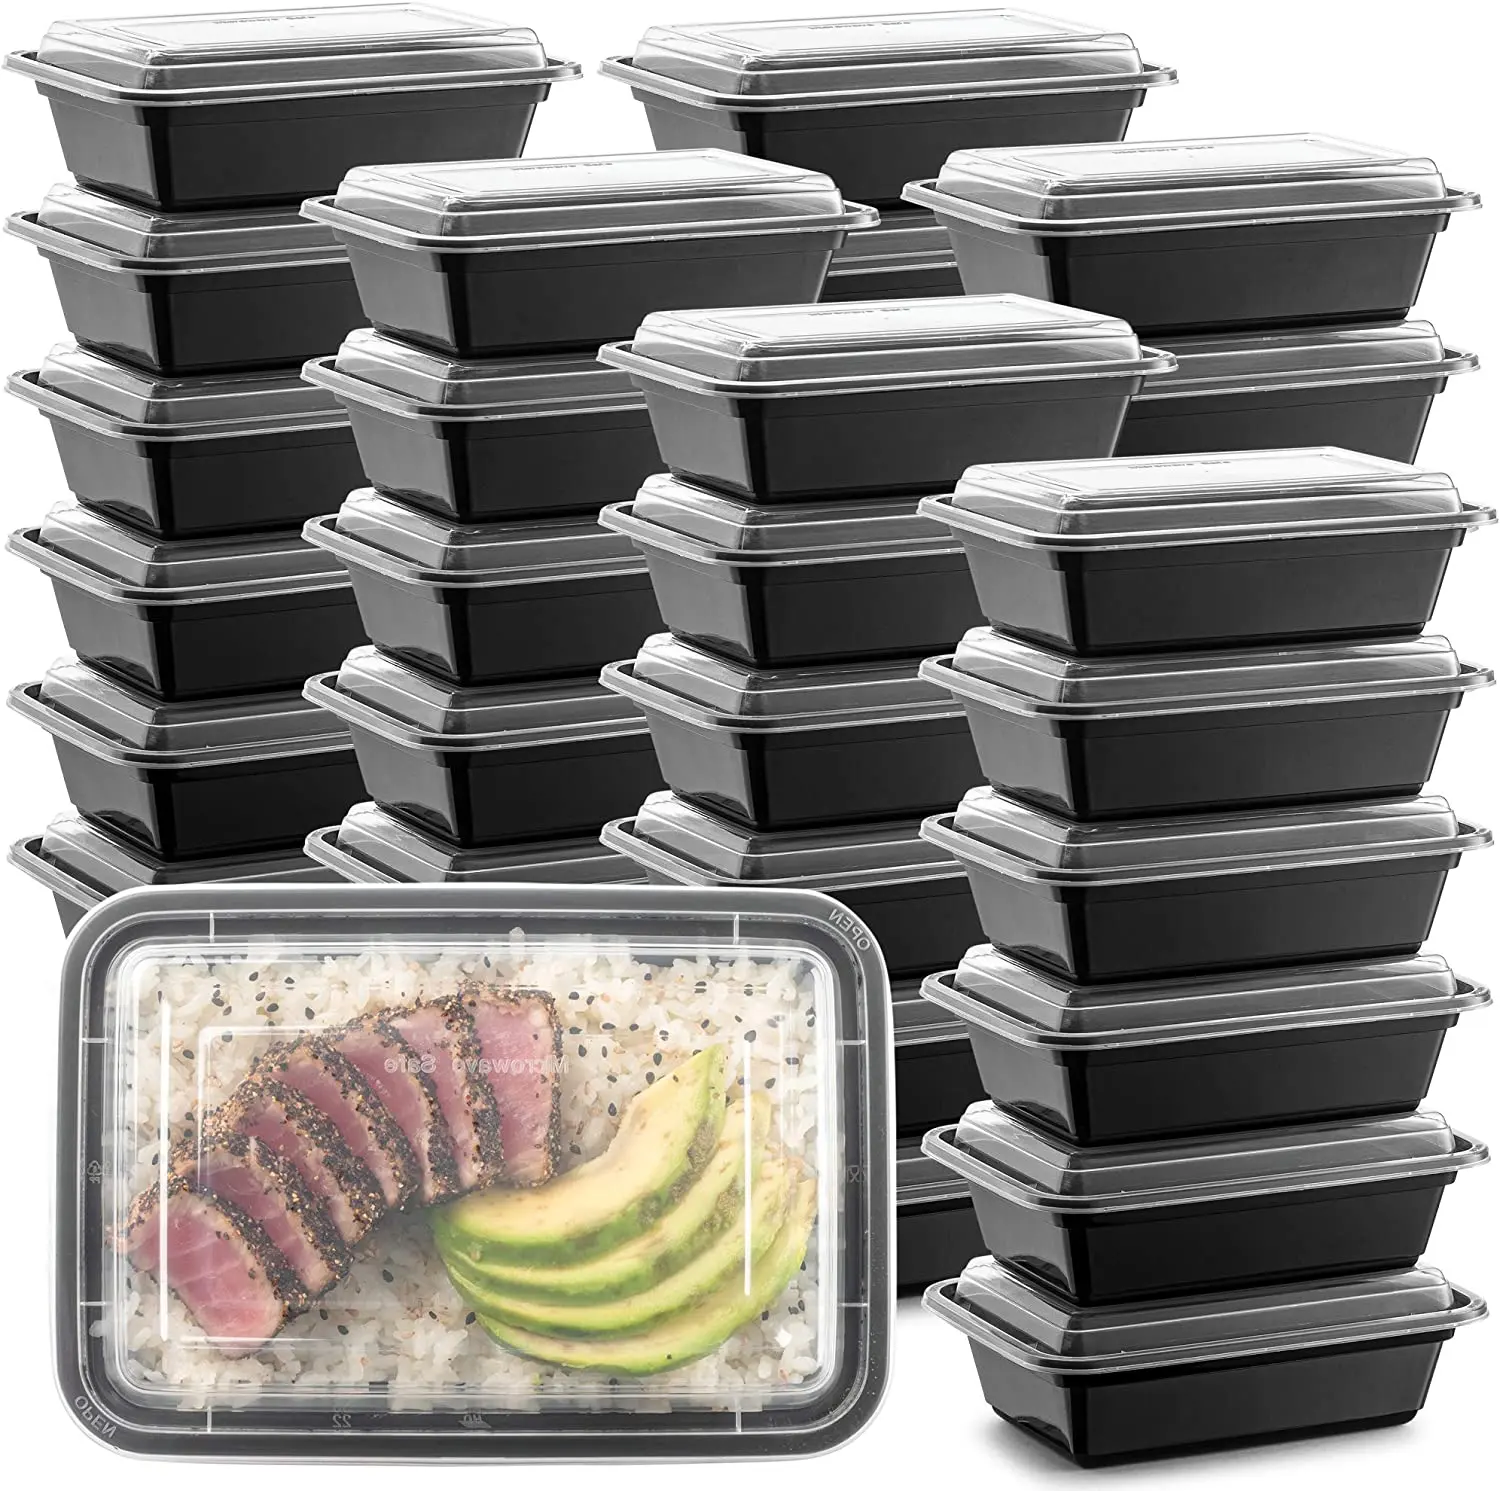 ซื้อกล่องพลาสติกใสสำหรับใส่อาหารเข้าไมโครเวฟได้,กล่องสำหรับใส่อาหารกลางวันสไตล์ทั่วไปบรรจุอาหารกลับบ้าน